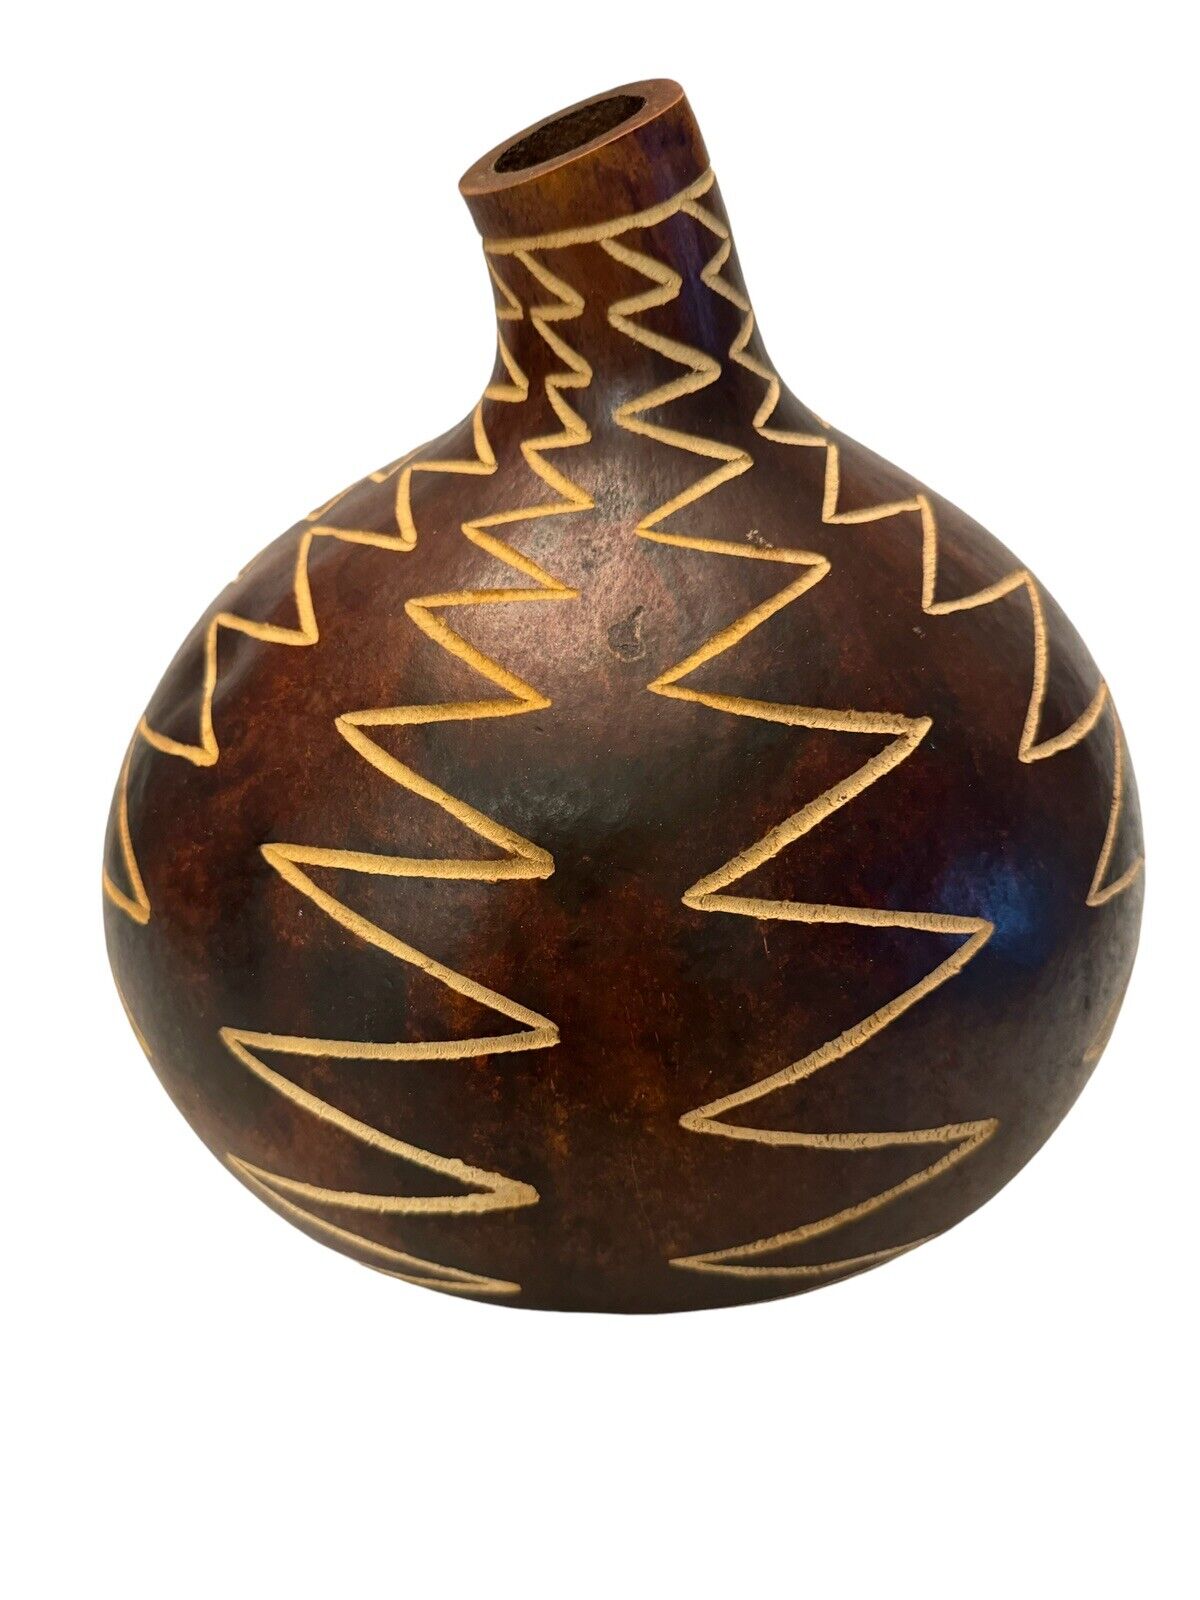 Hand-Carved Kenya Gourd Decorative Vase Brown Carved Signed Primitive 12” x 12”